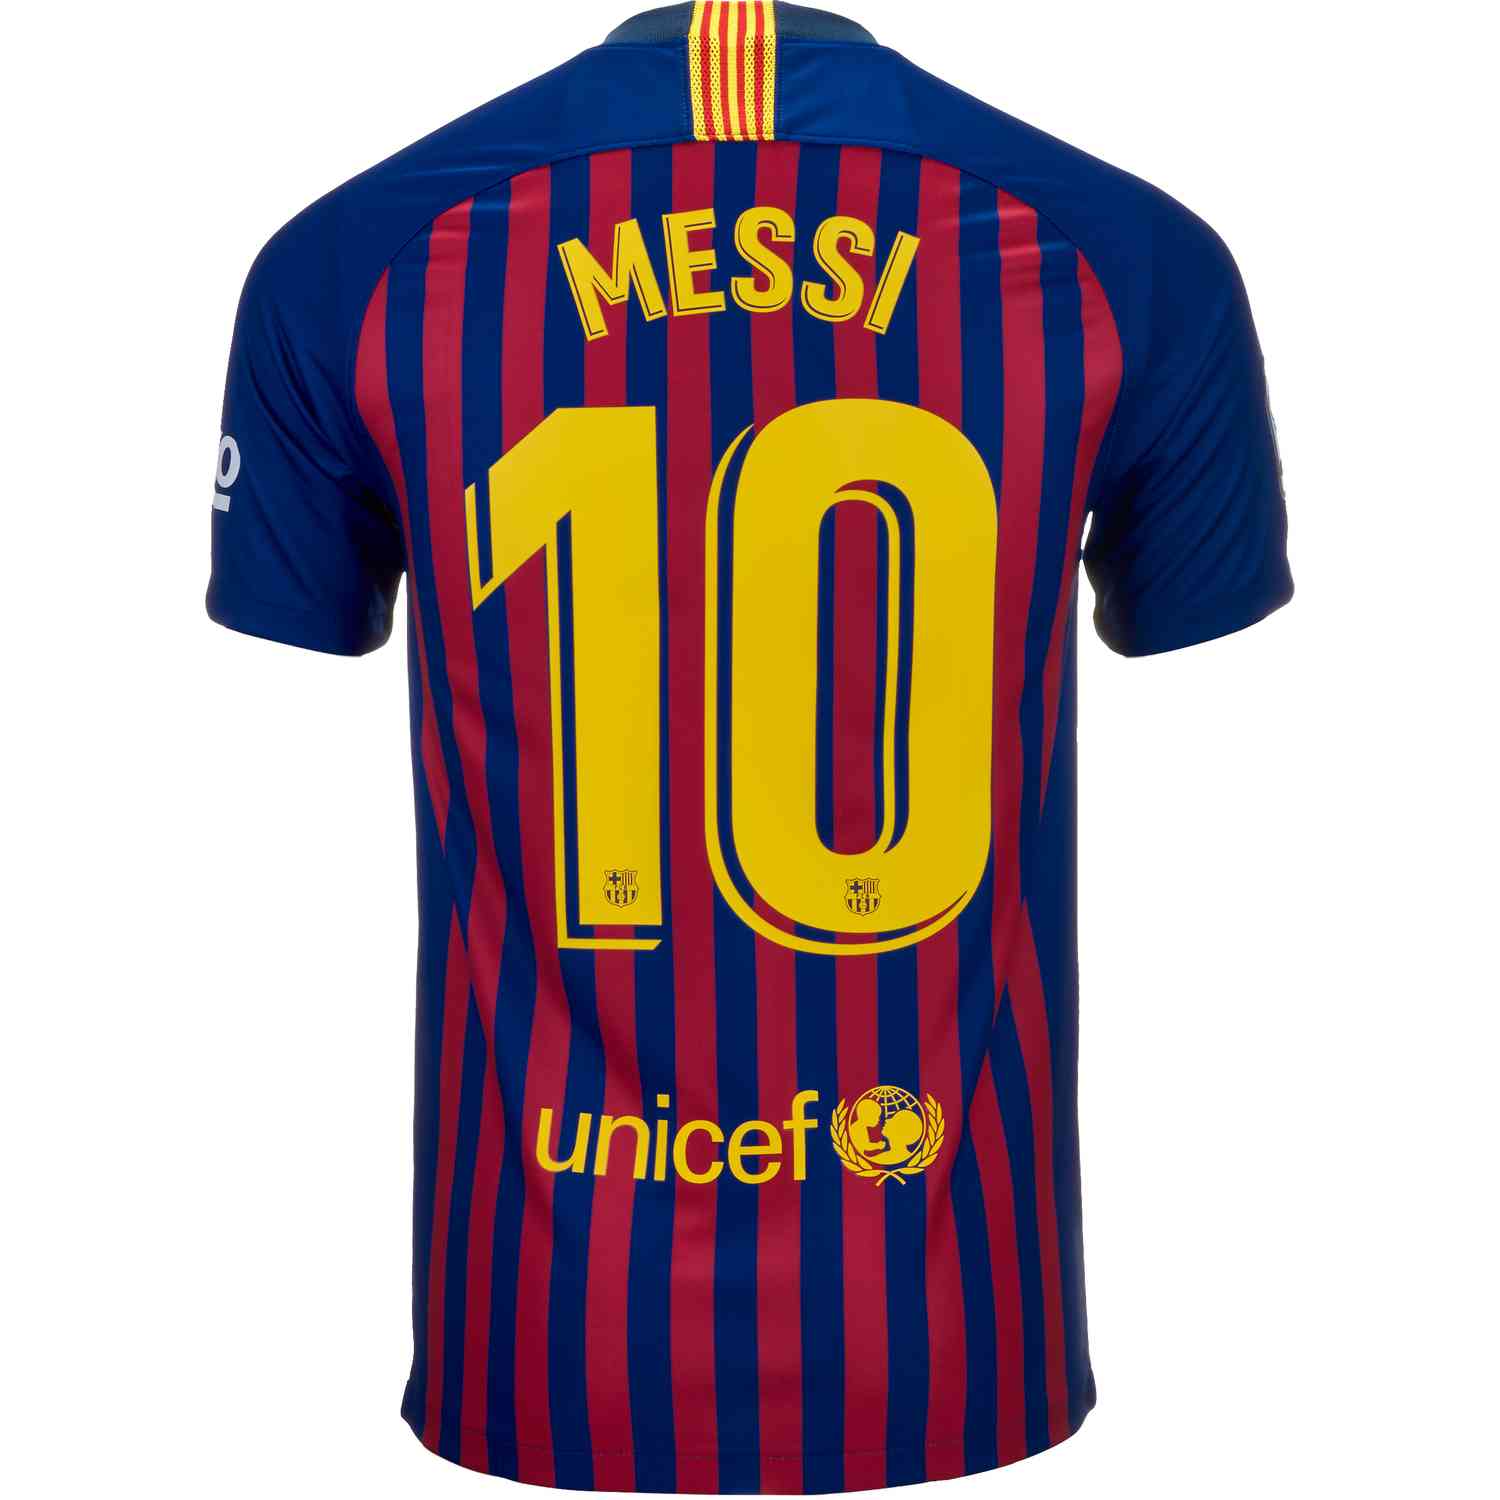 Bv6143 455 Nike Messi Barca Home Jsy 01 